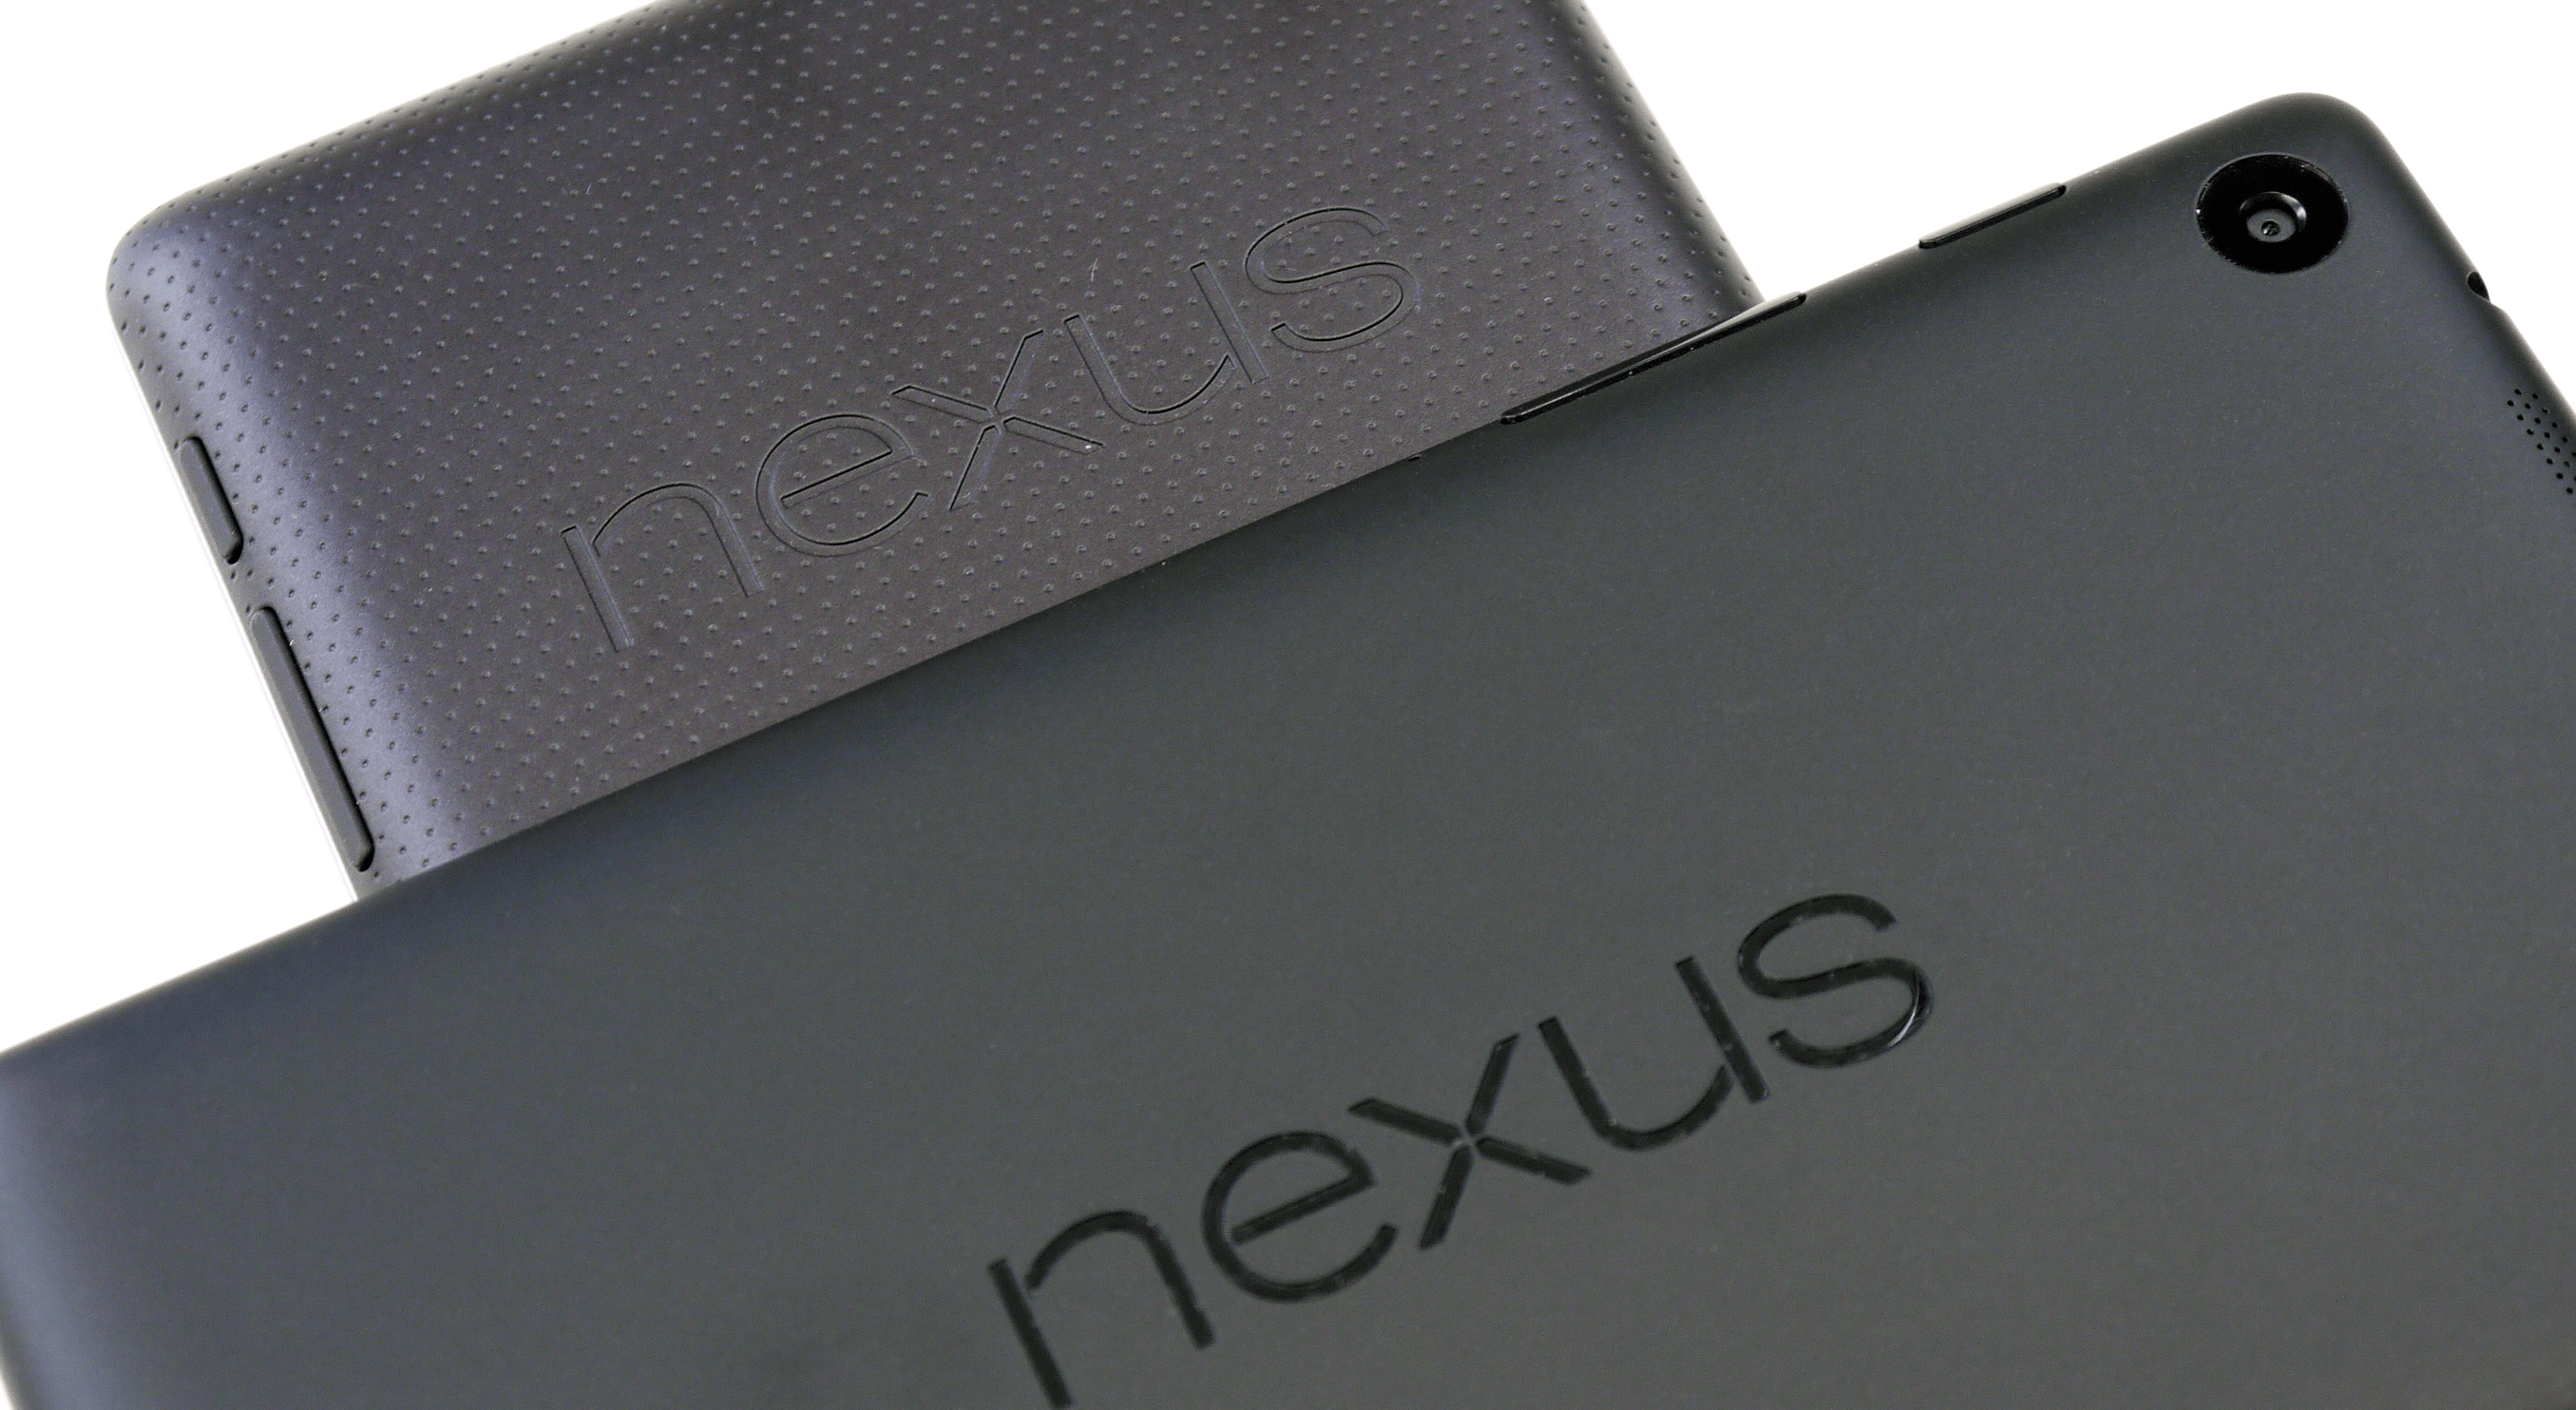 LG et Google pourraient travailler sur une nouvelle Nexus 7